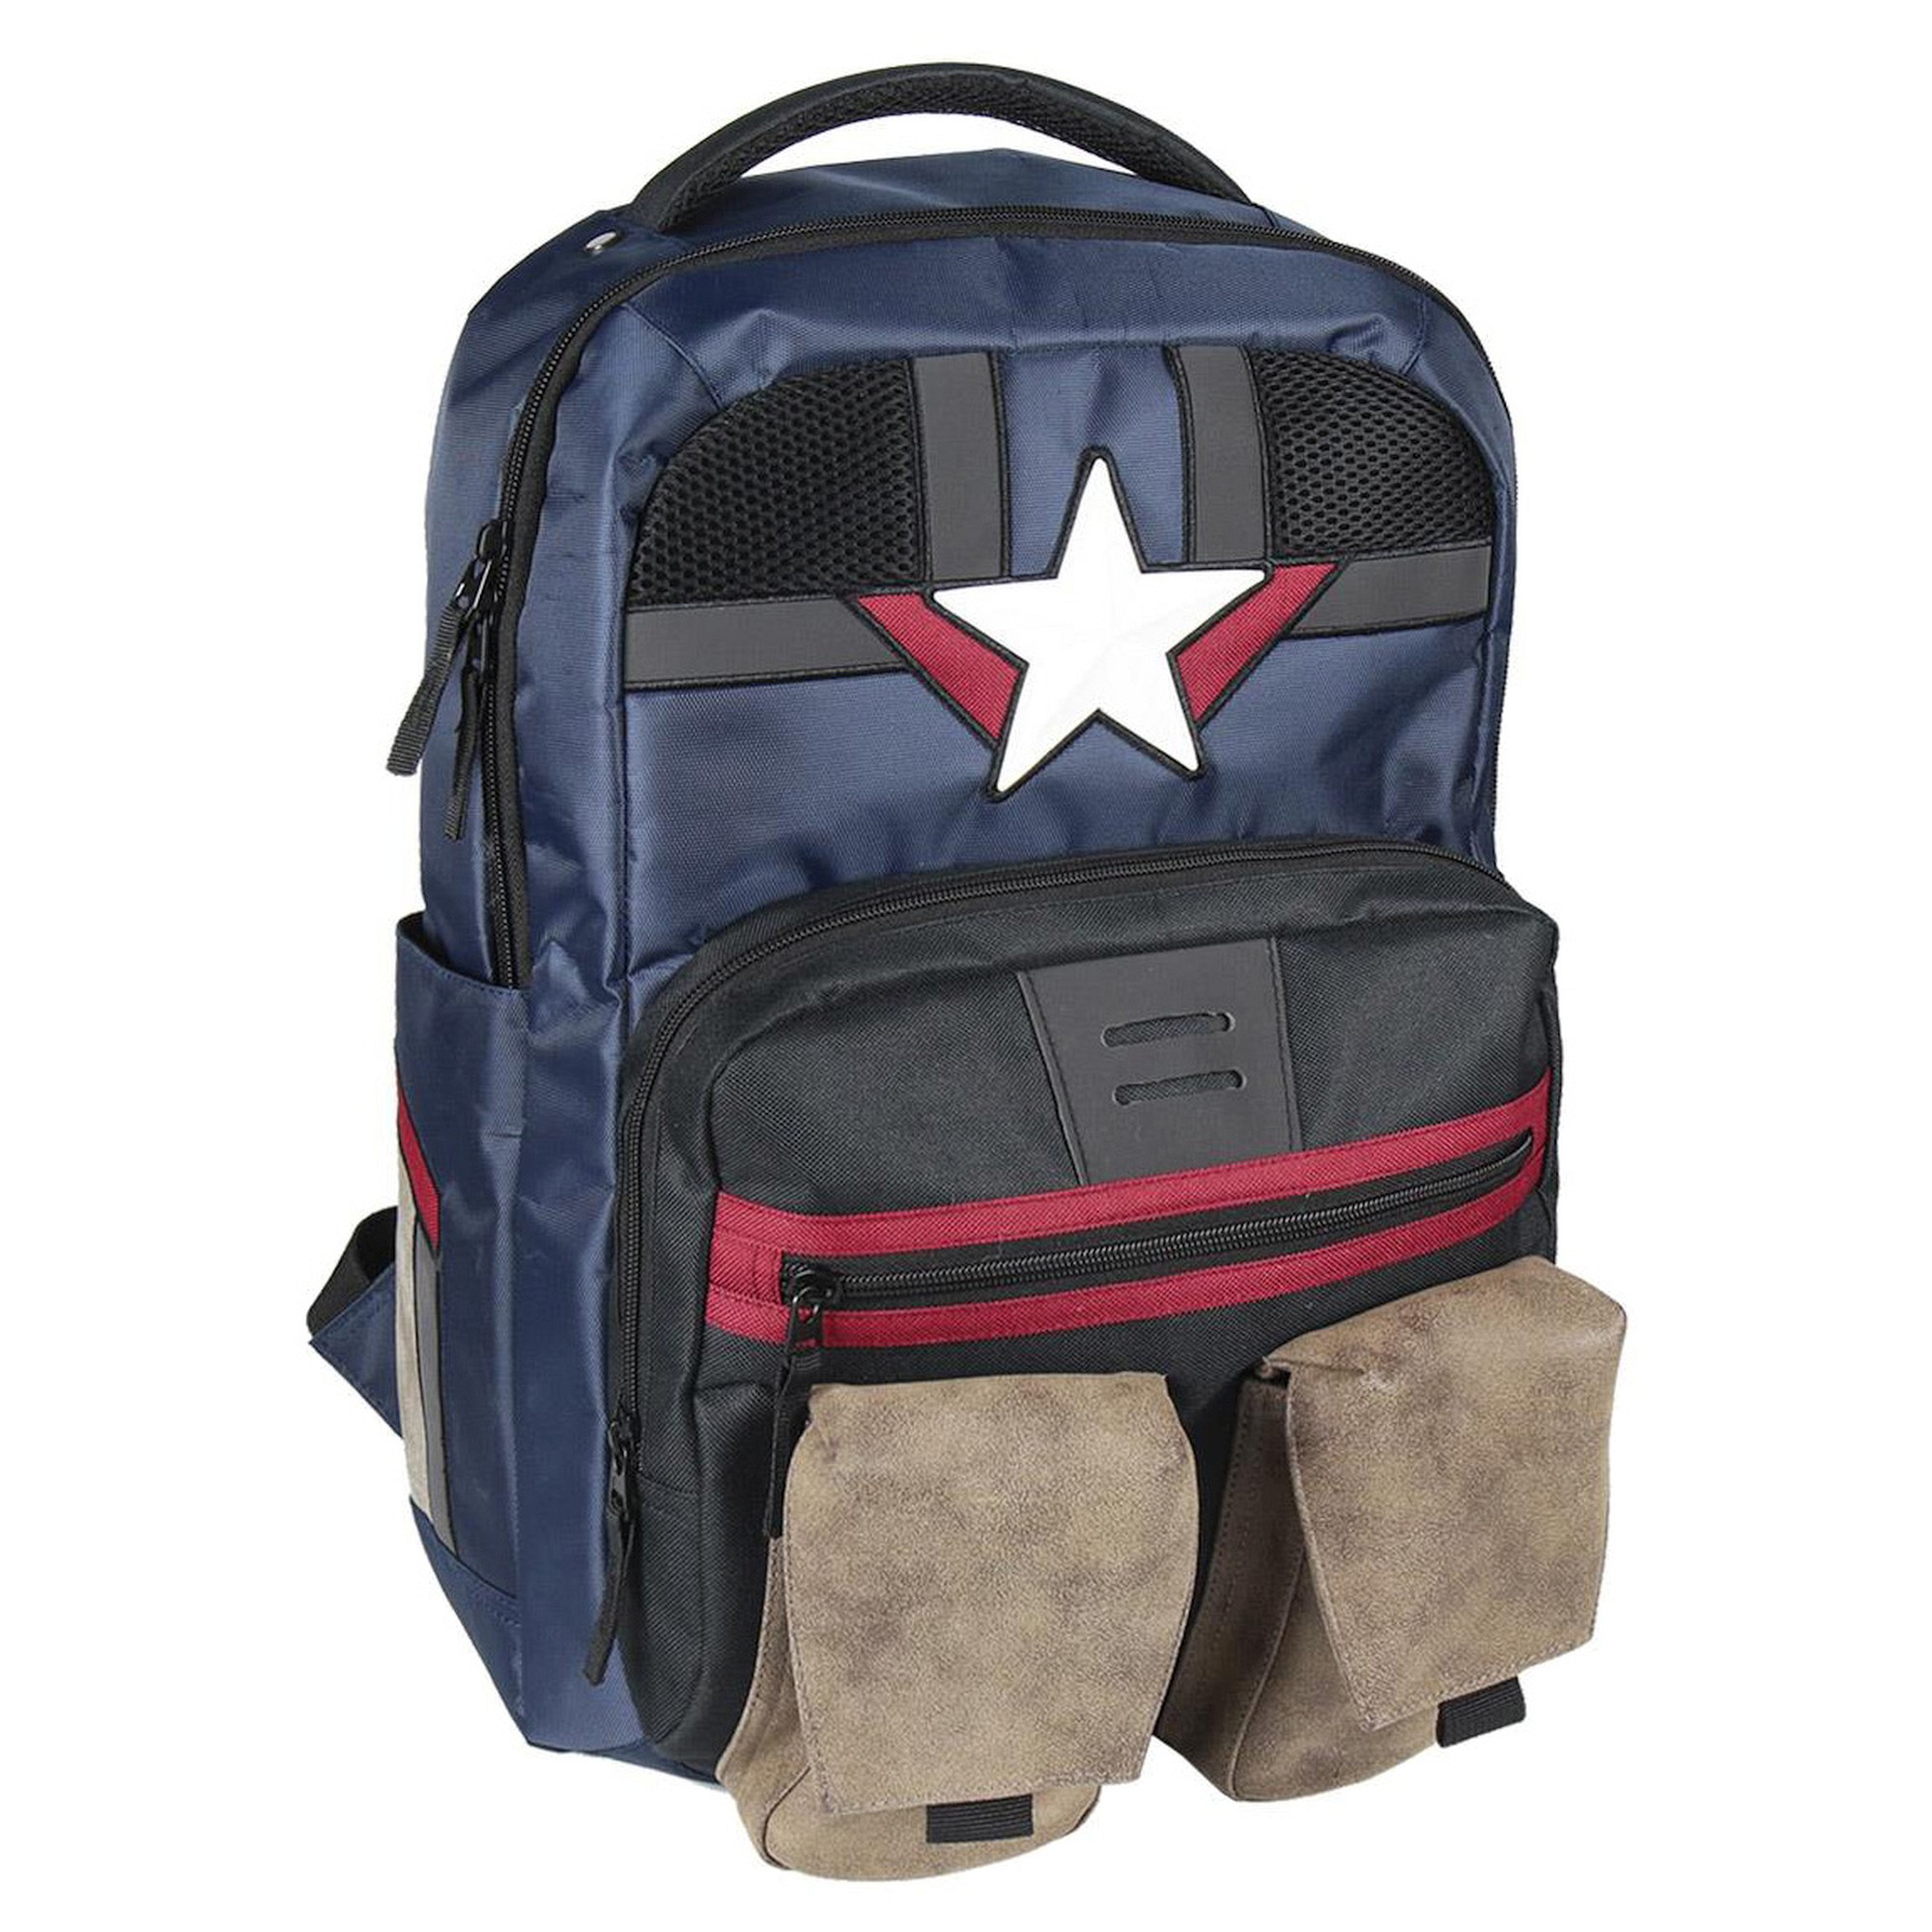 Рюкзак Cerda Casual Travel 48 cm, цвет Avengers Captain America рюкзак первый мститель captain america оранжевый 1